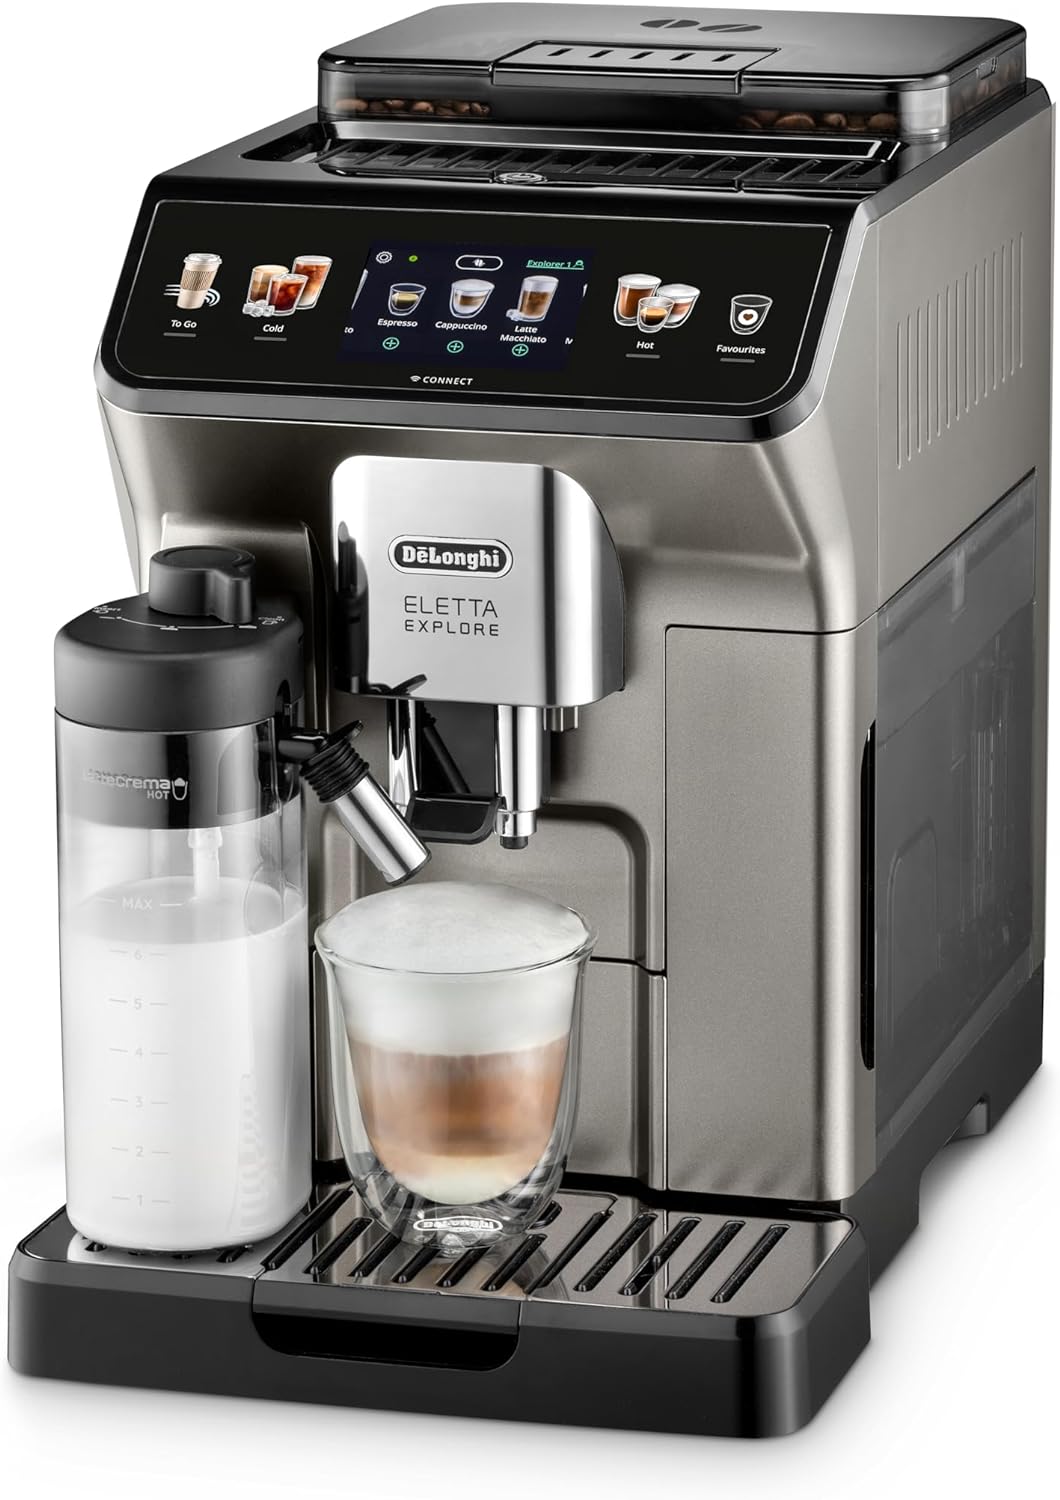 ماكينة تحضير القهوة ديلونجي إليتا إكسبلور تيتانيوم - ECAM450.86.T